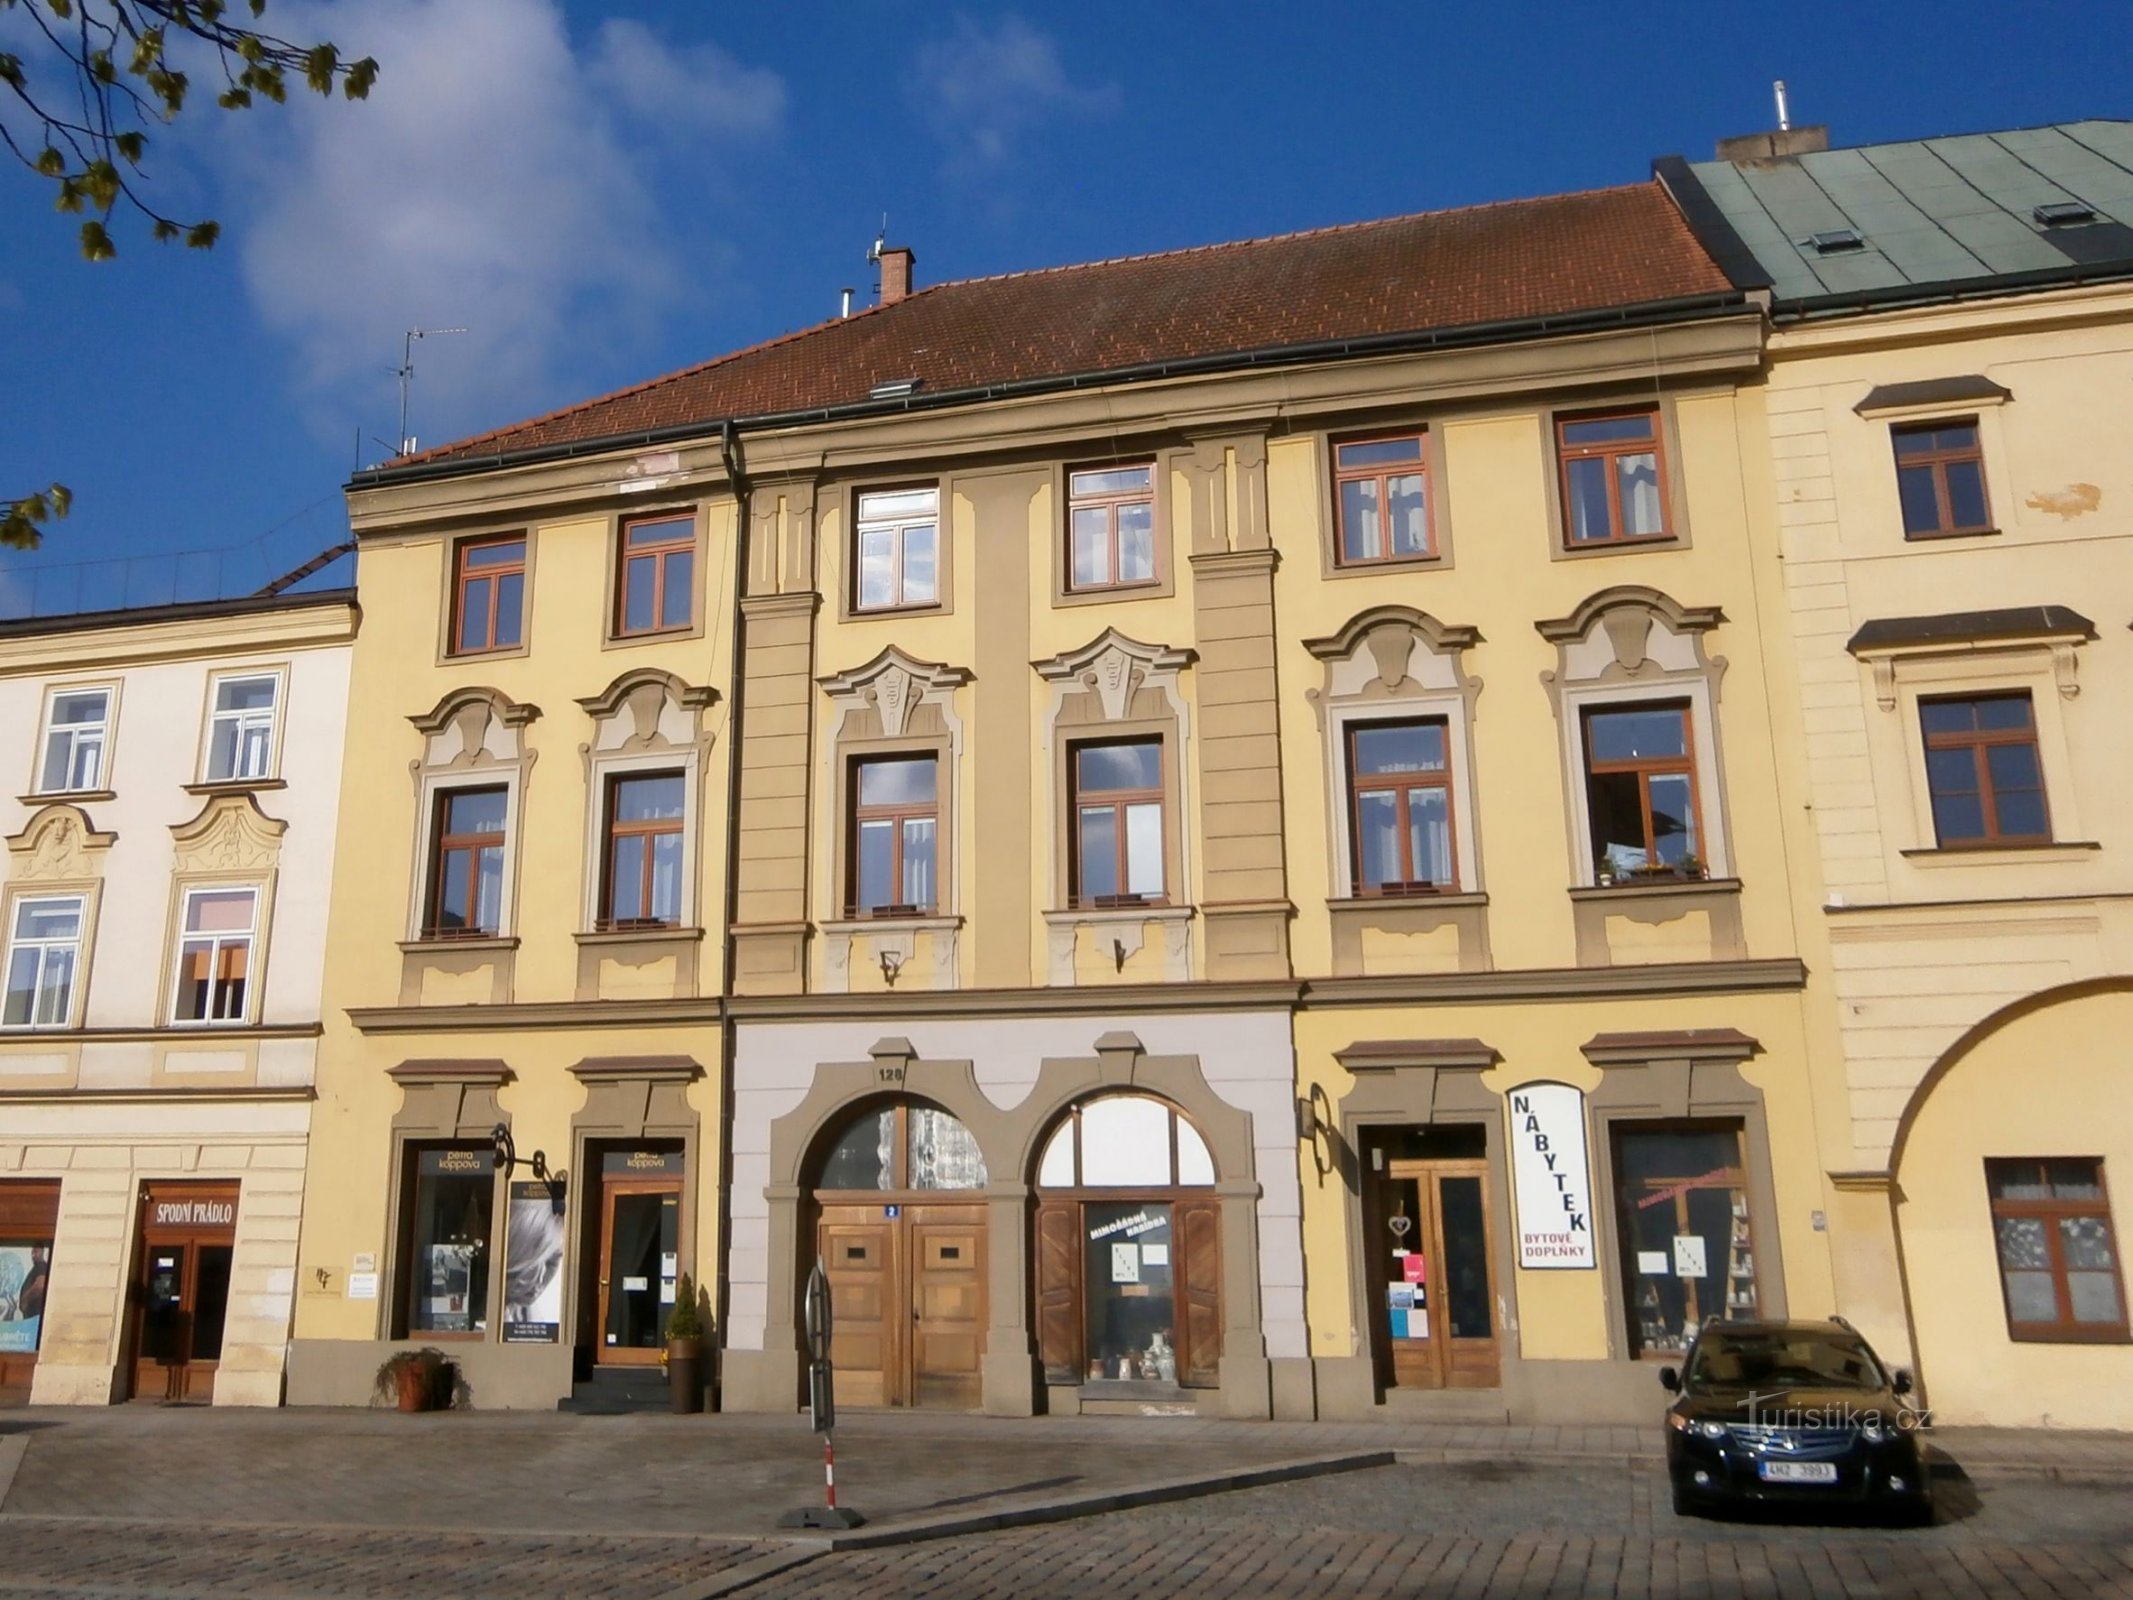 Malé náměstí nr. 128 (Hradec Králové, 14.4.2017. april XNUMX)